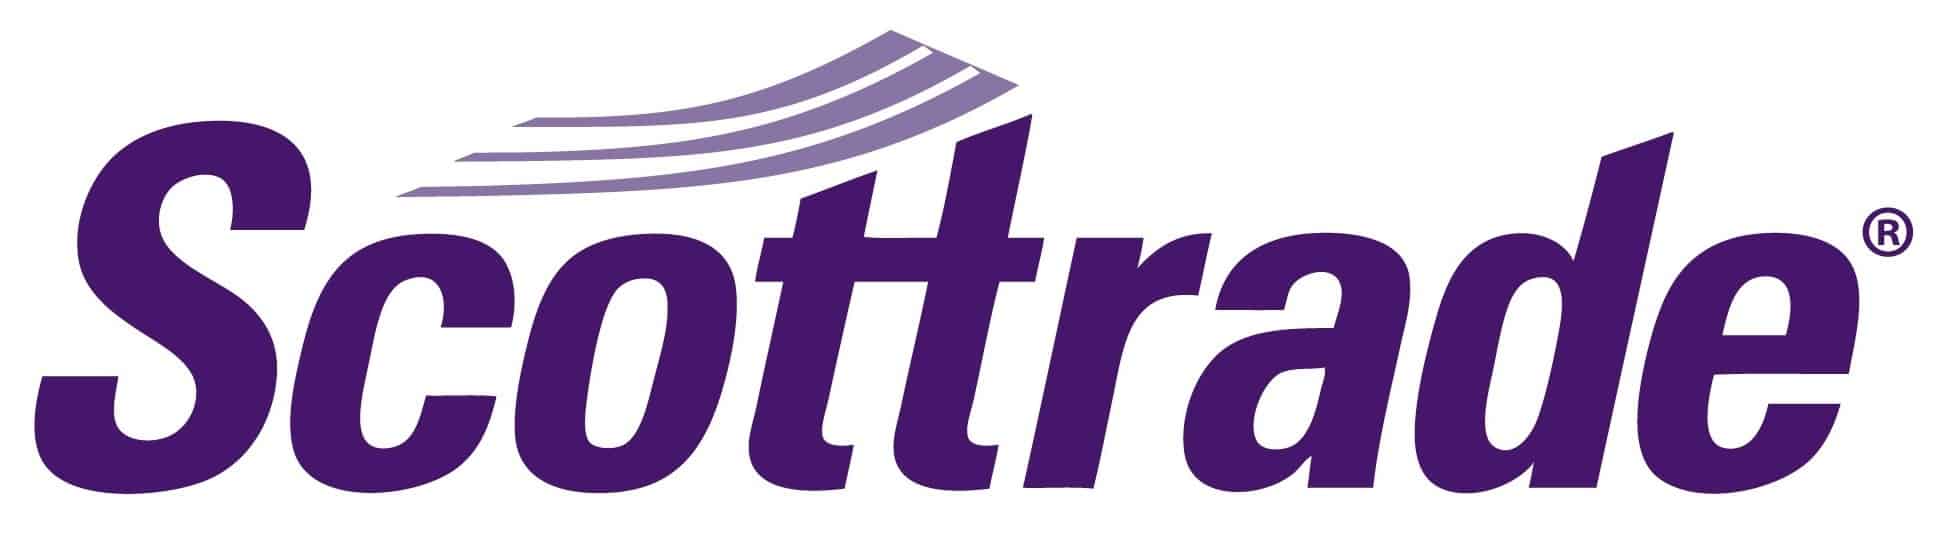 scottrade logo